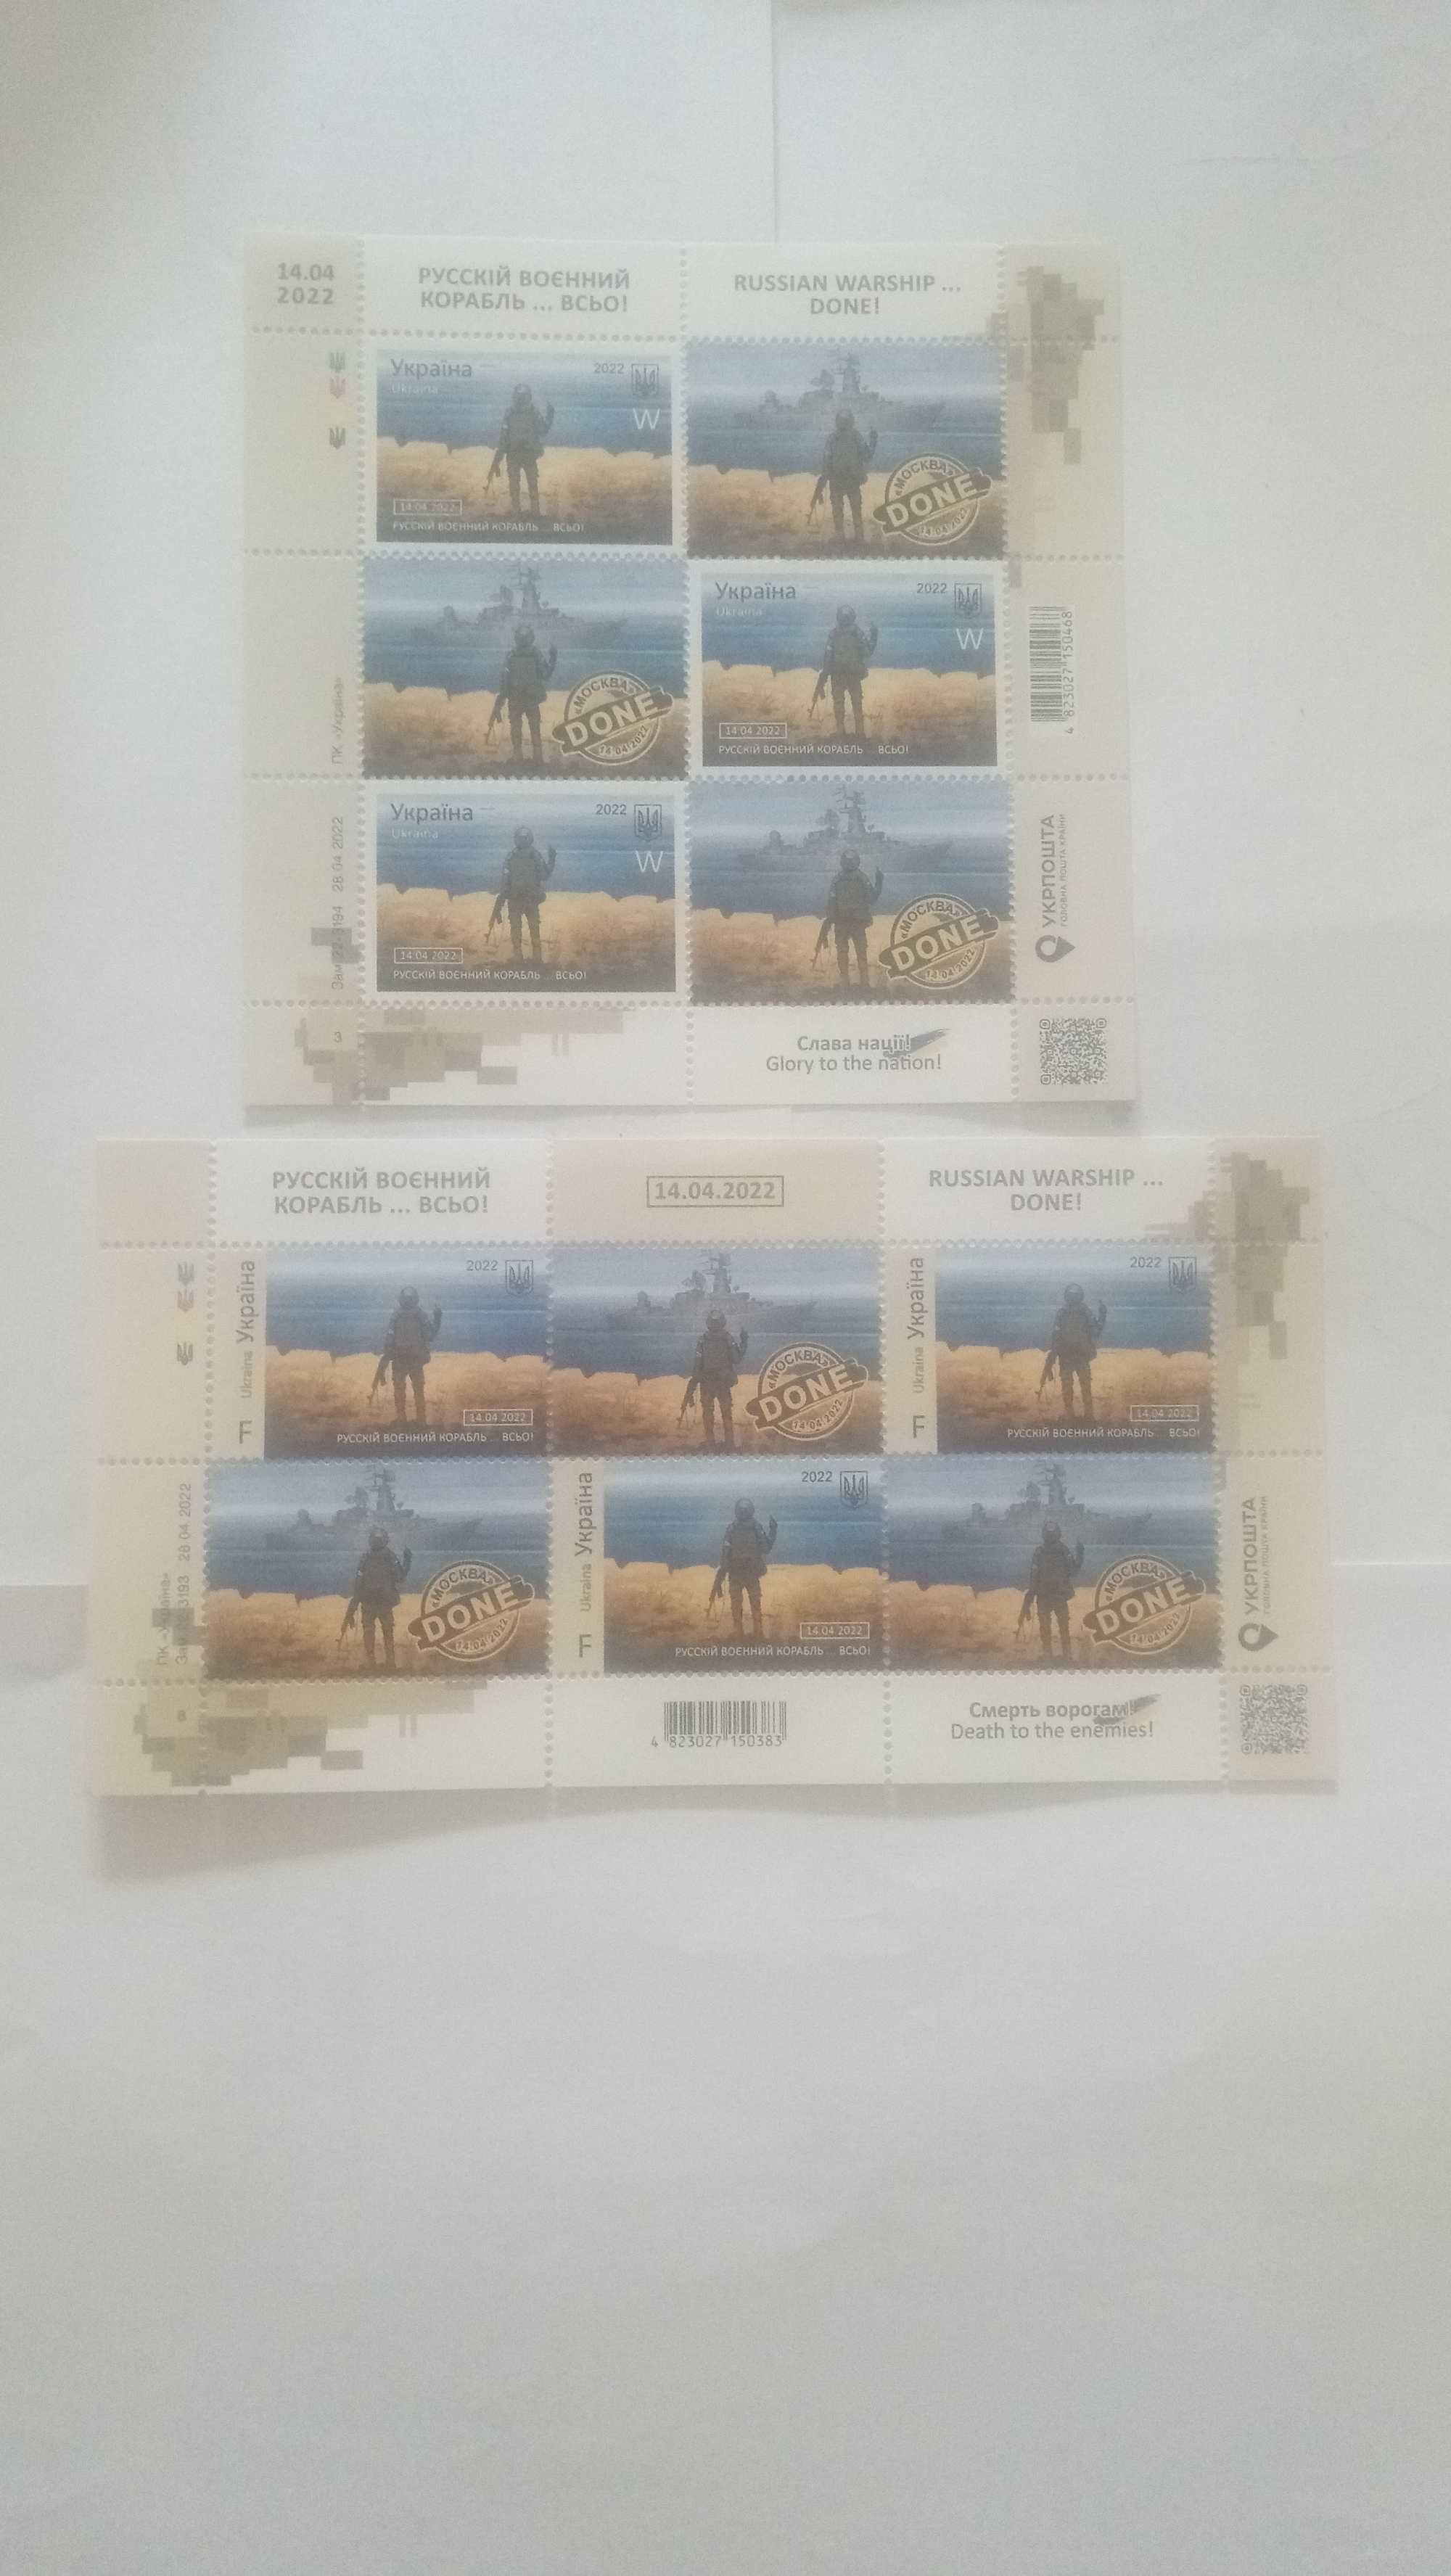 Два блоки марок " Руській воєнний корабель ... всьо " і п'ять листівок